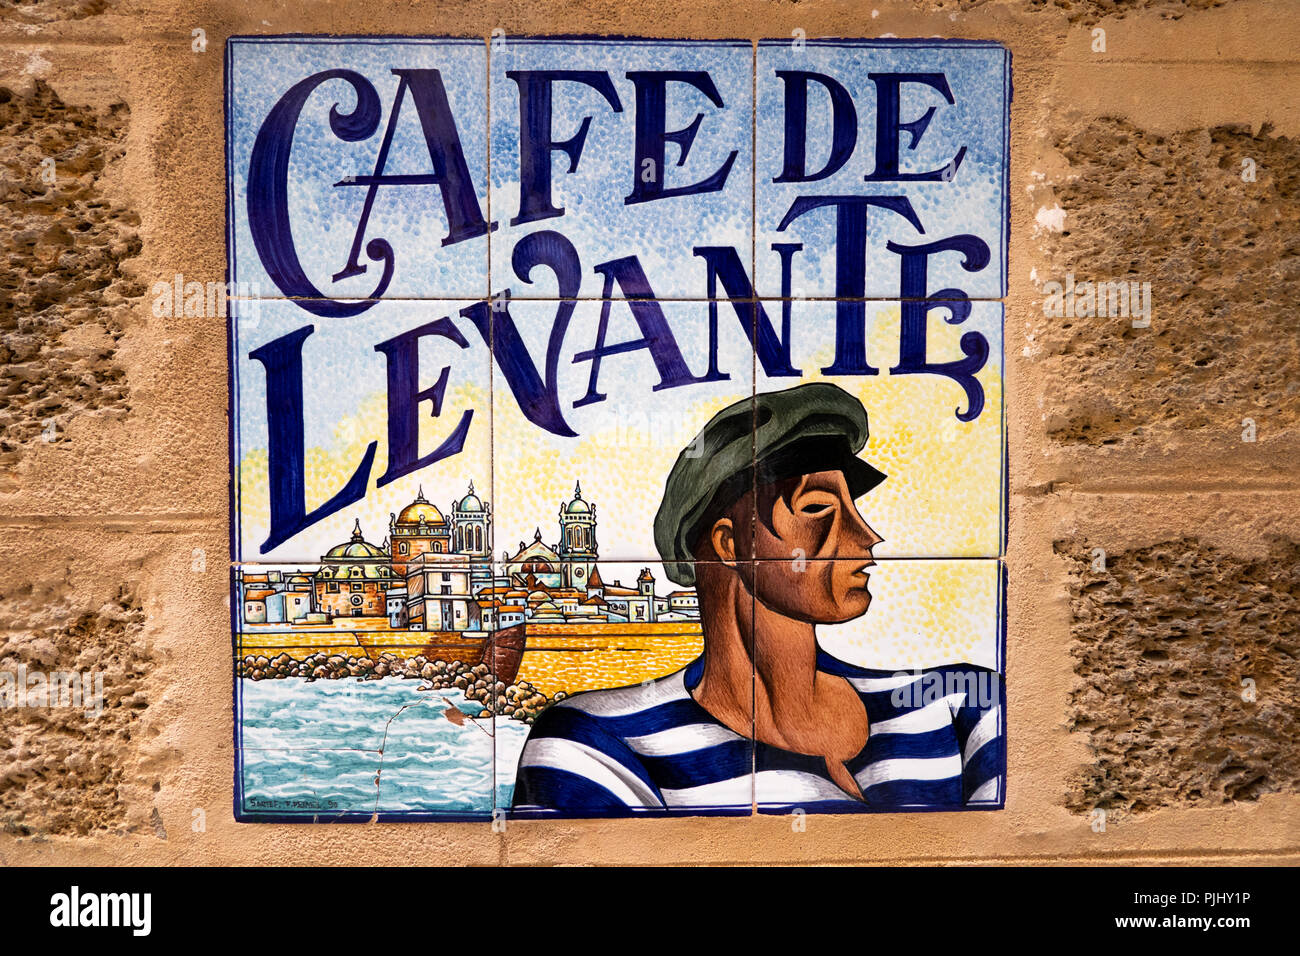 Spain, Cadiz, Calle San Francisco, Café De Levante, tiled sign Stock Photo